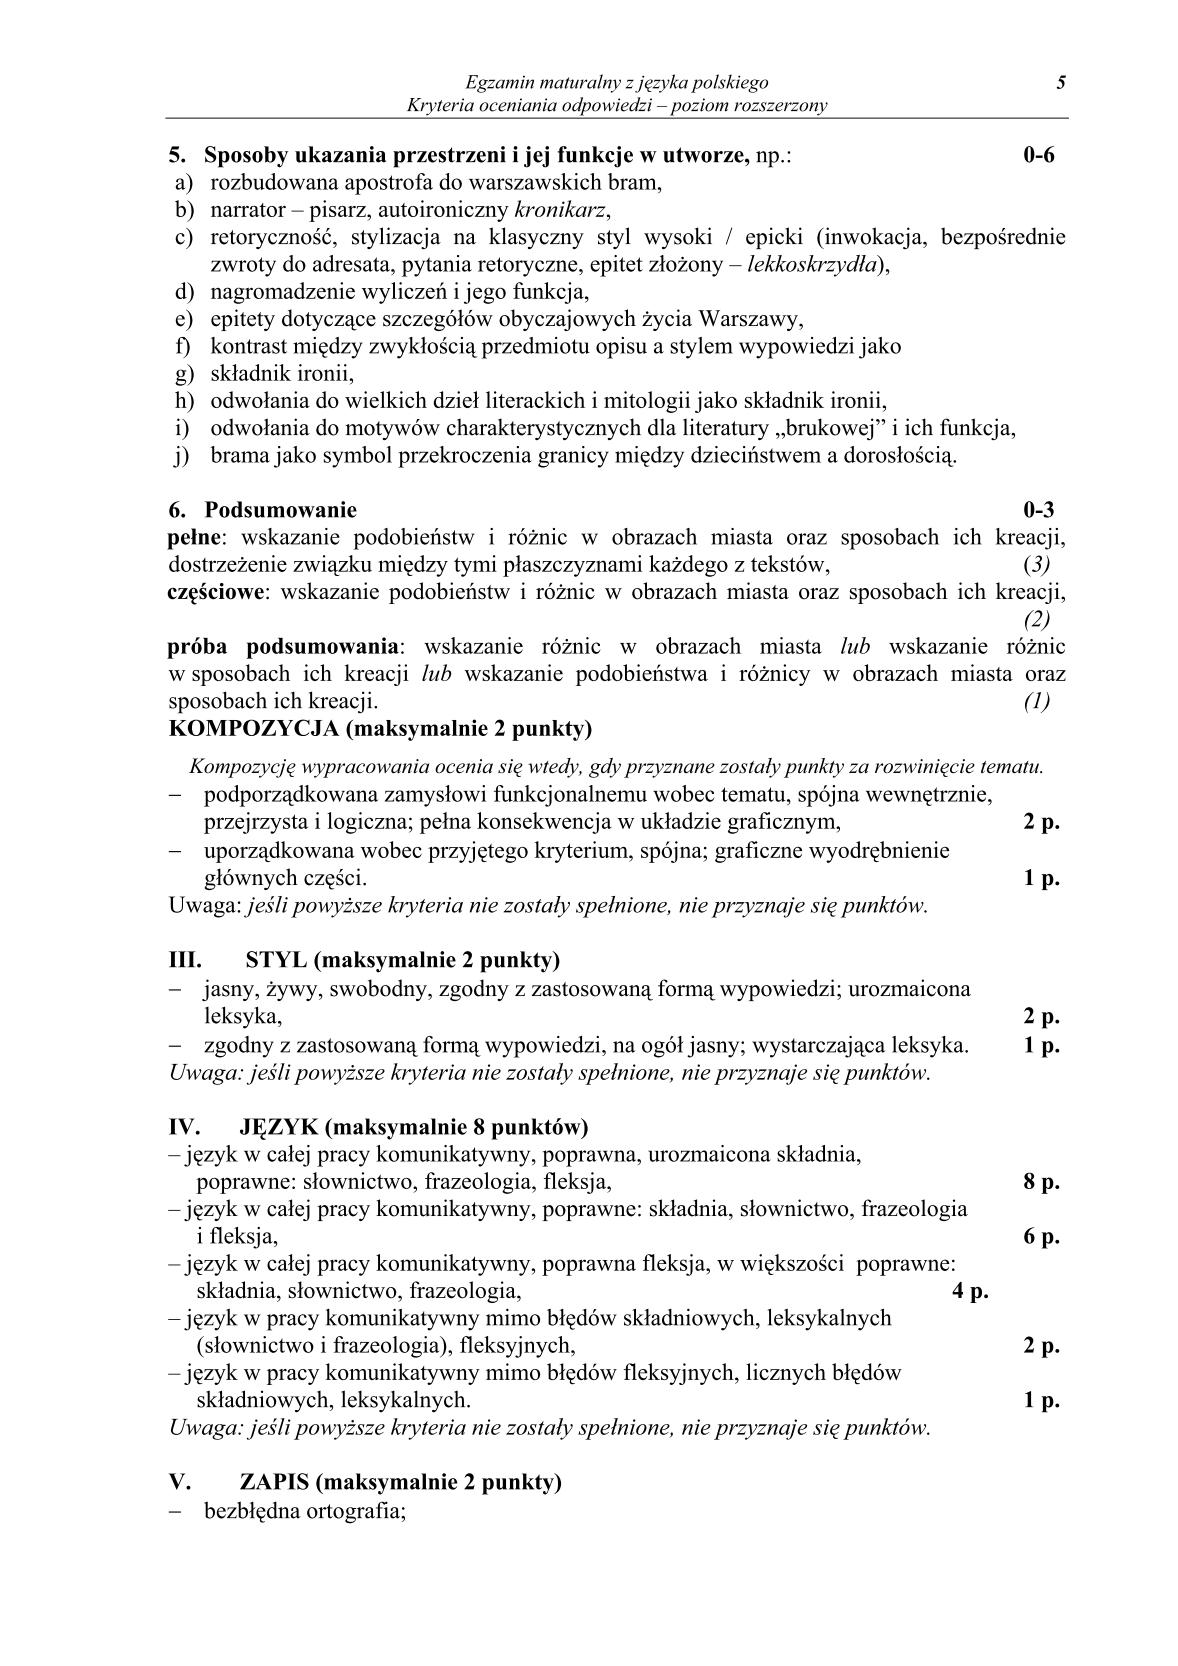 odpowiedzi-jezyk-polski-poziom-rozszerzony-matura-2014-str.5